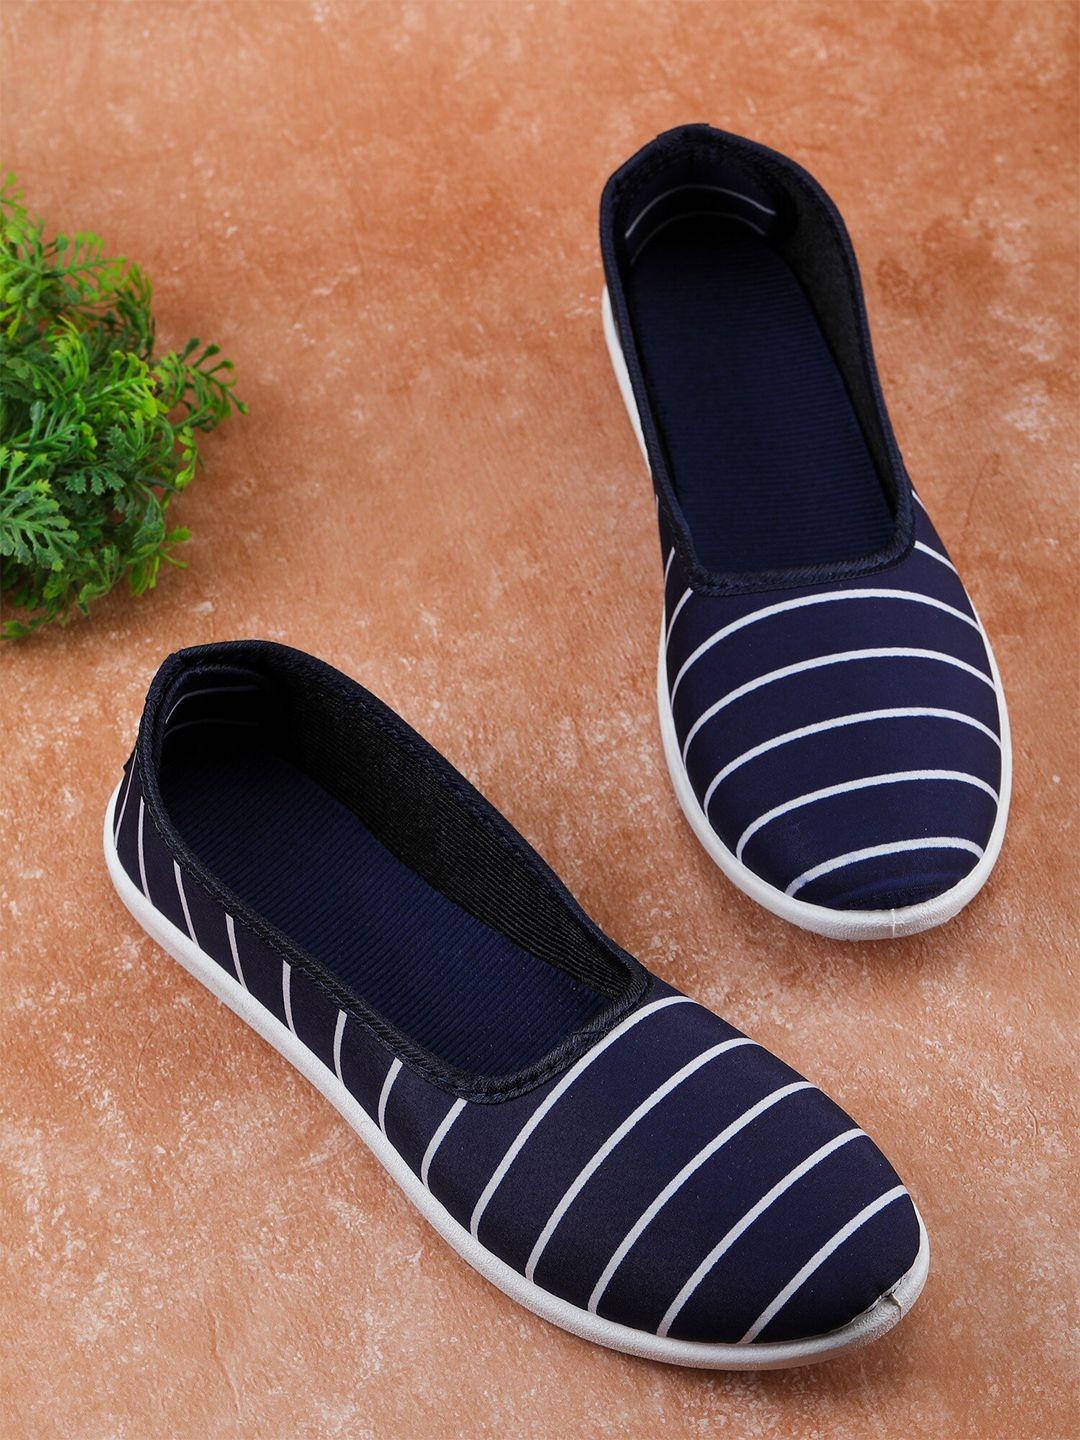 fabbmate women navy blue walking non-marking shoes